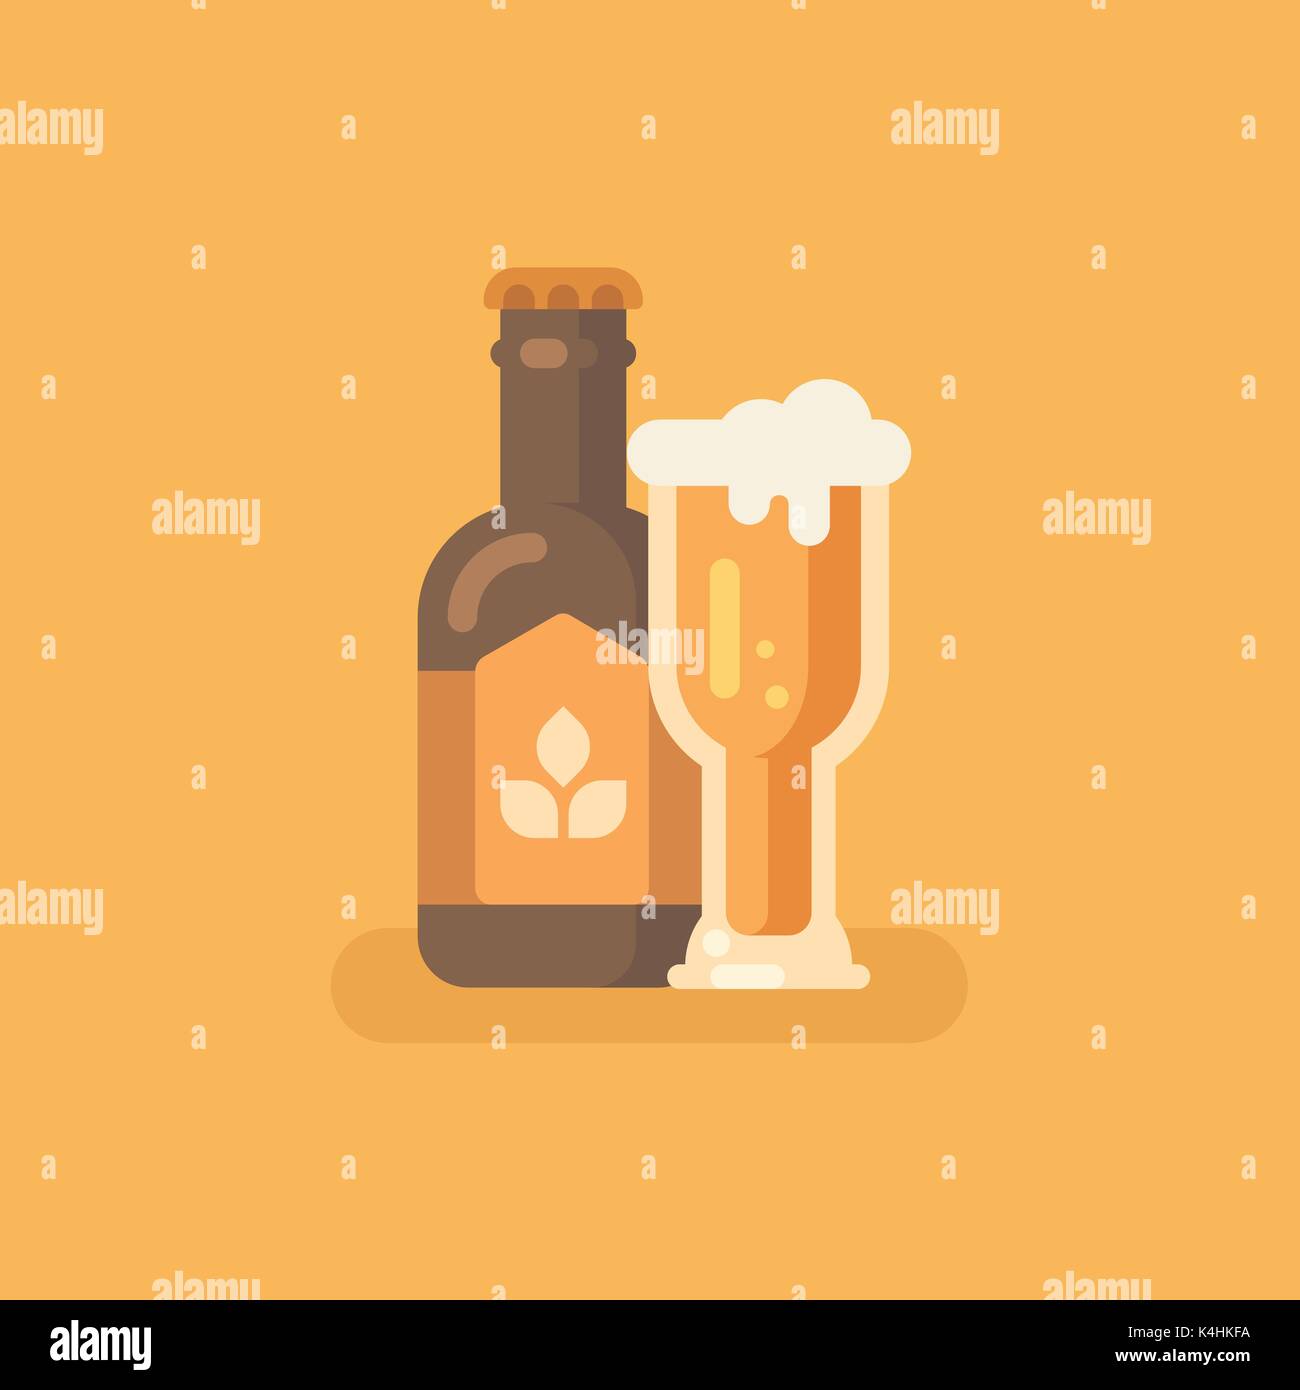 Bier Flasche und Bier Glas auf orangem Hintergrund. Oktoberfest flachbild Abbildung Stock Vektor